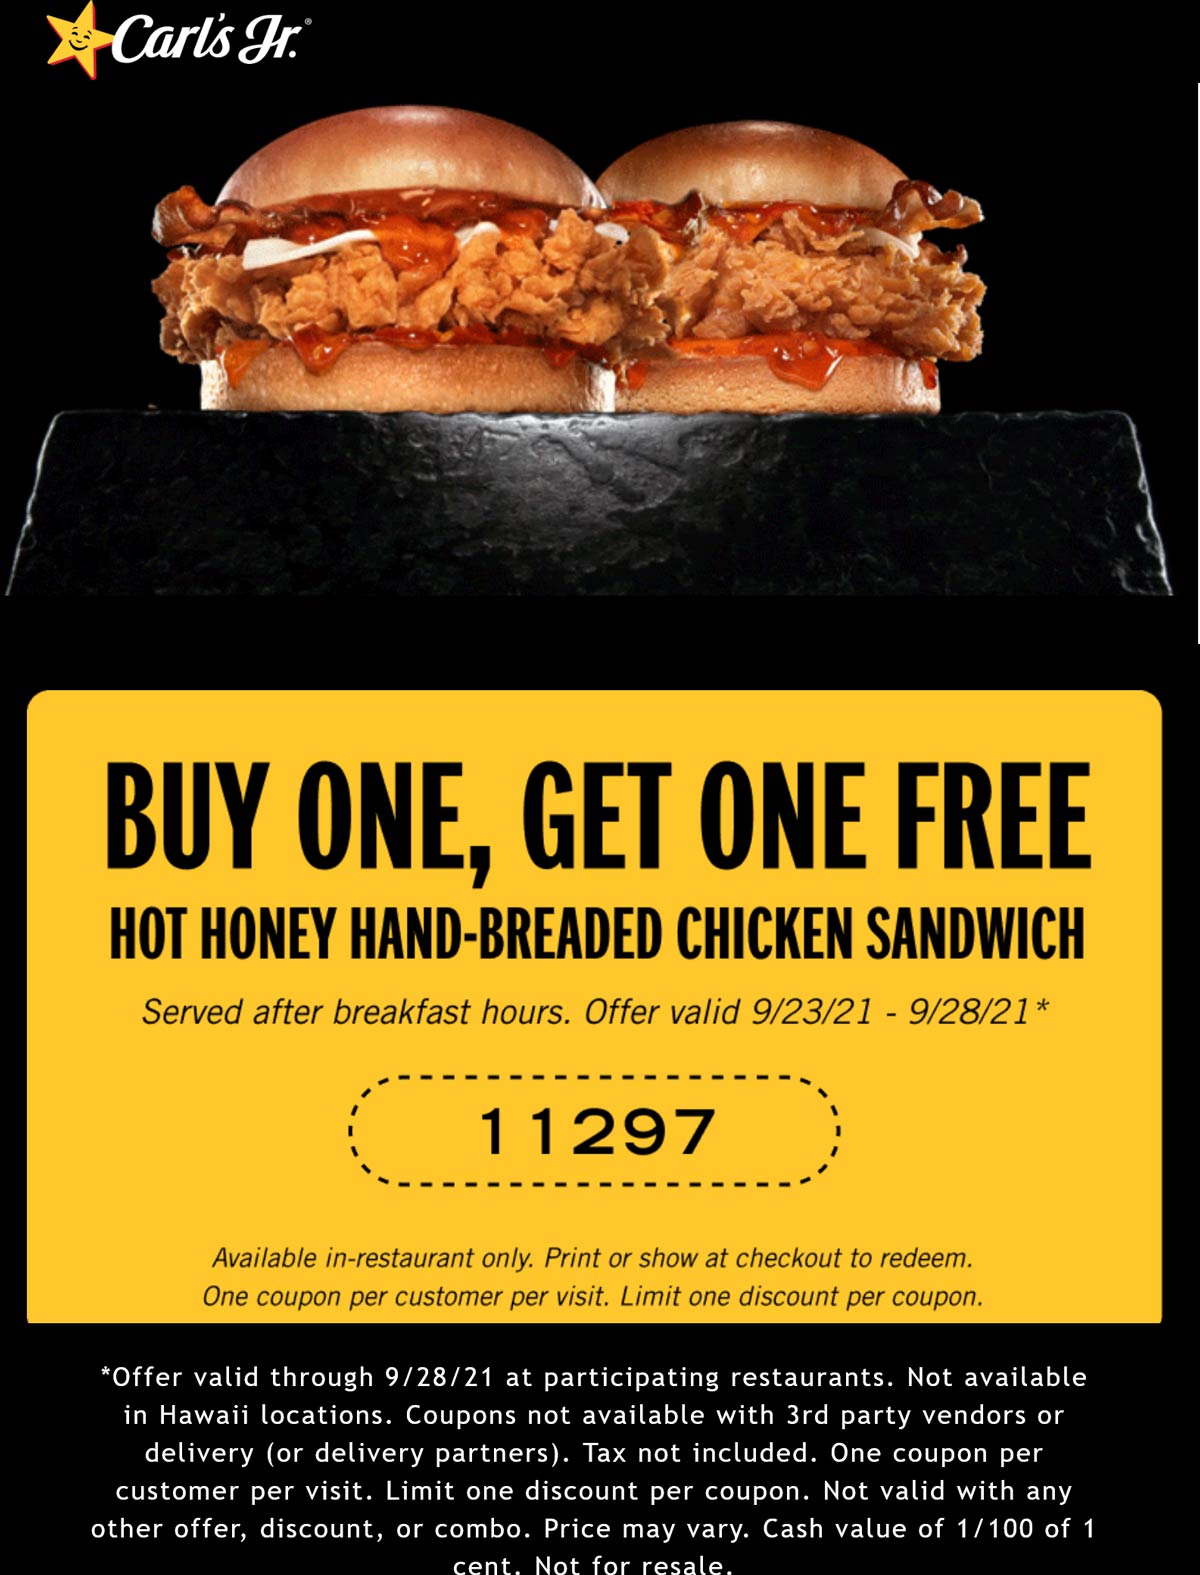 Carls Jr restaurants Coupon  Second hot honey chicken sandwich free at Carls Jr #carlsjr 